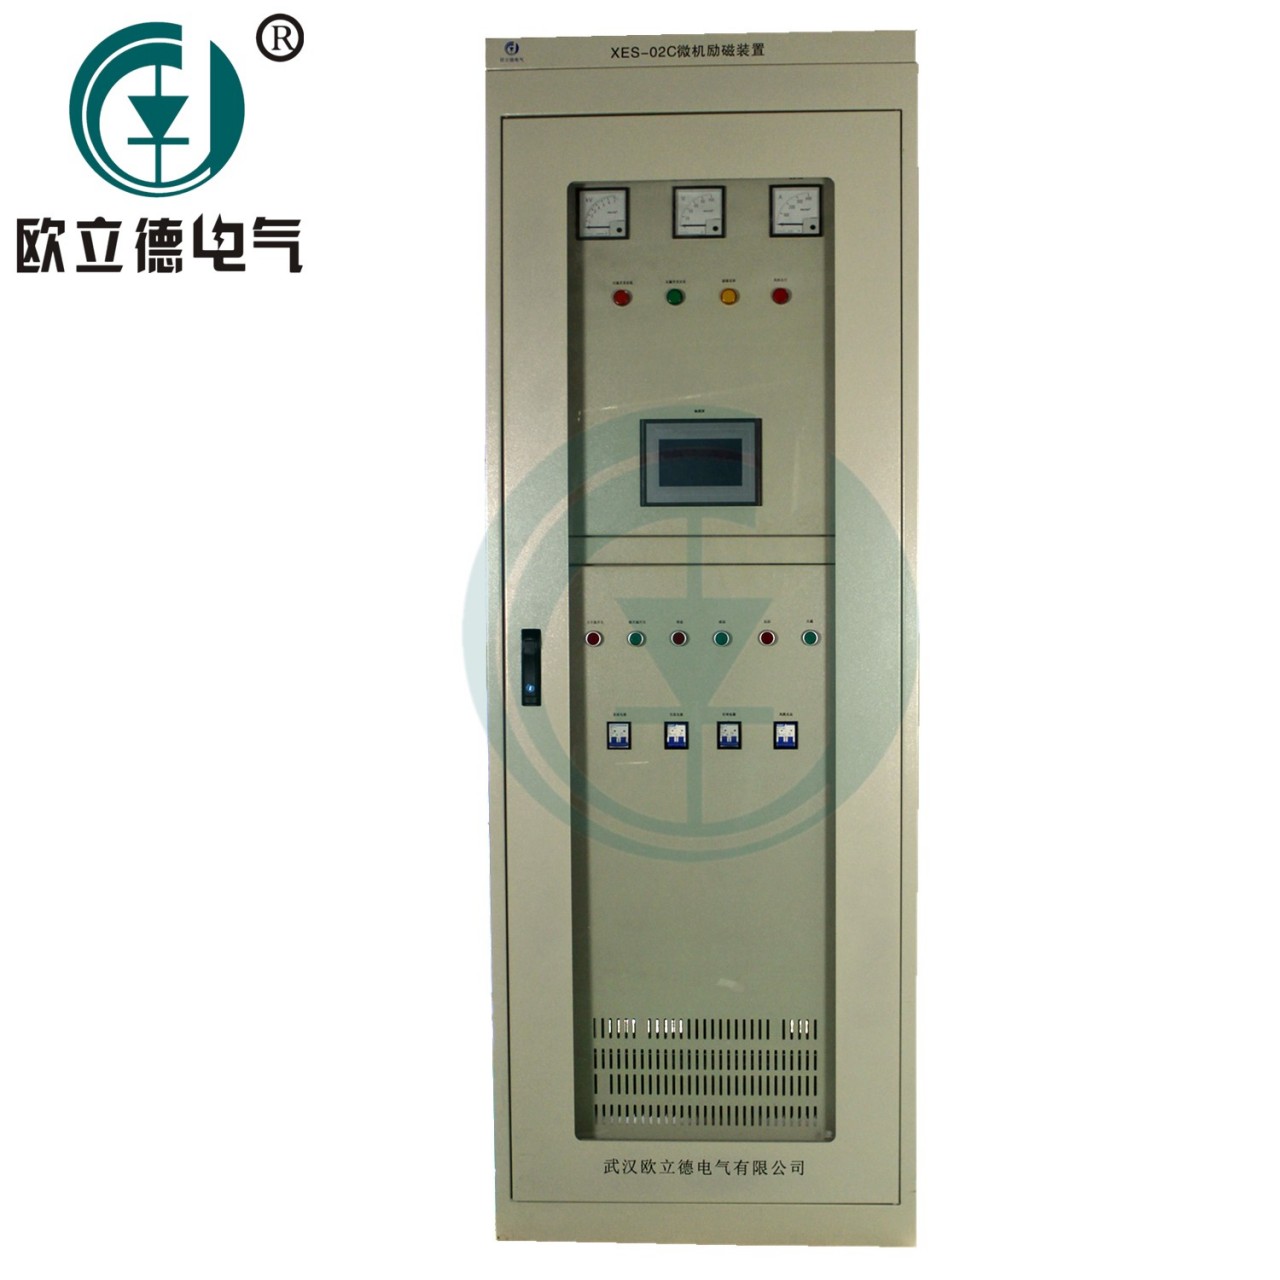 武汉欧立德XES-02C-602同步电机励磁柜